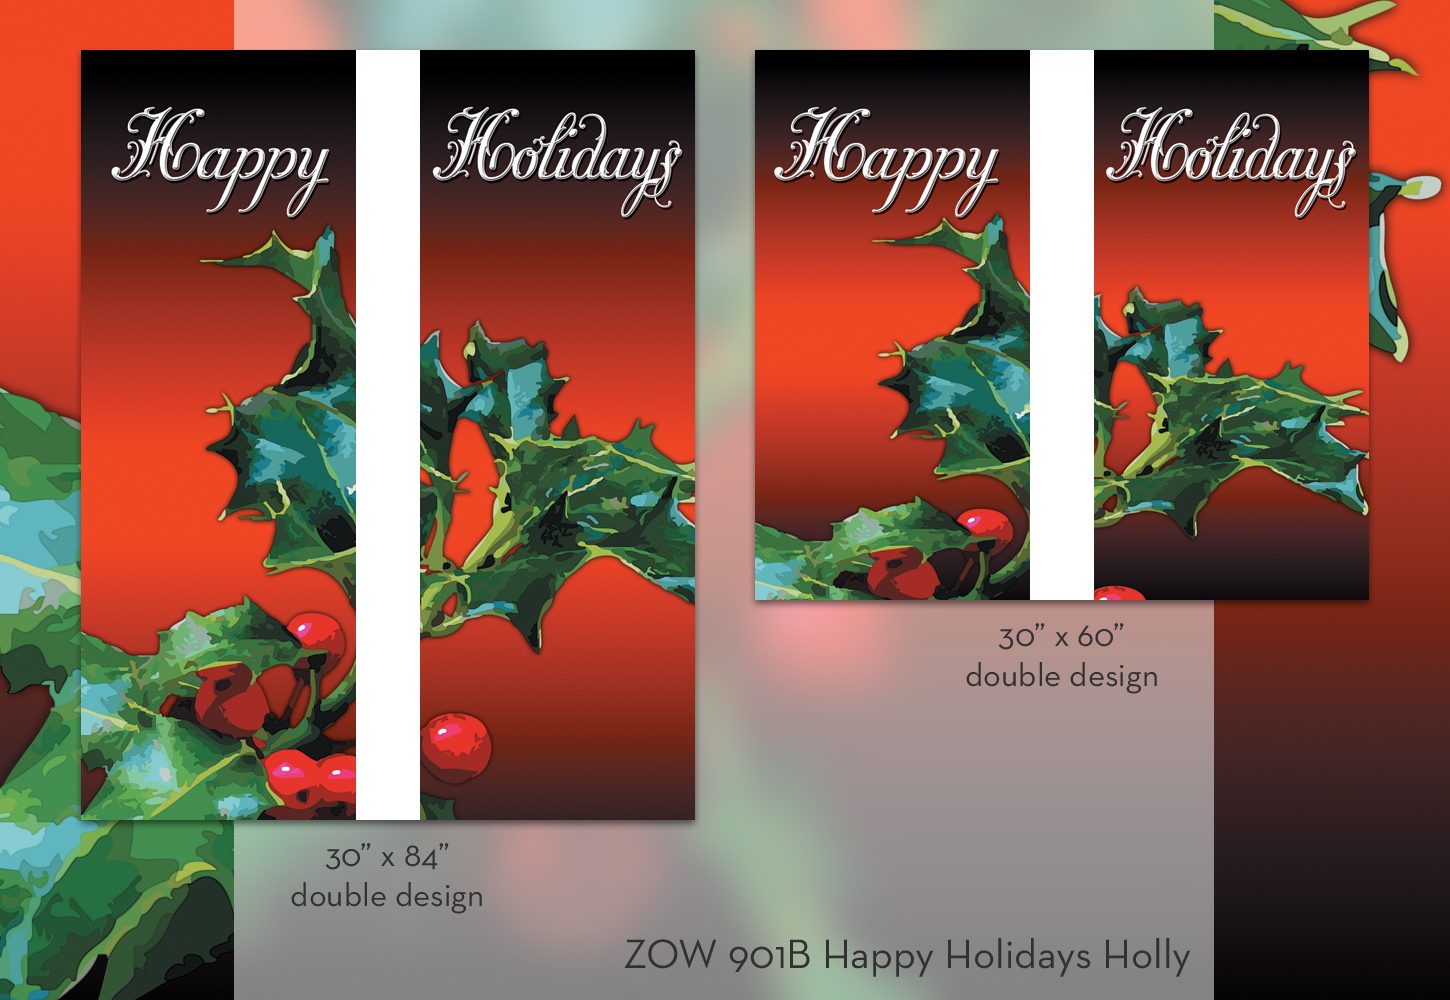 ZOW 901B Happy Holidays Holly